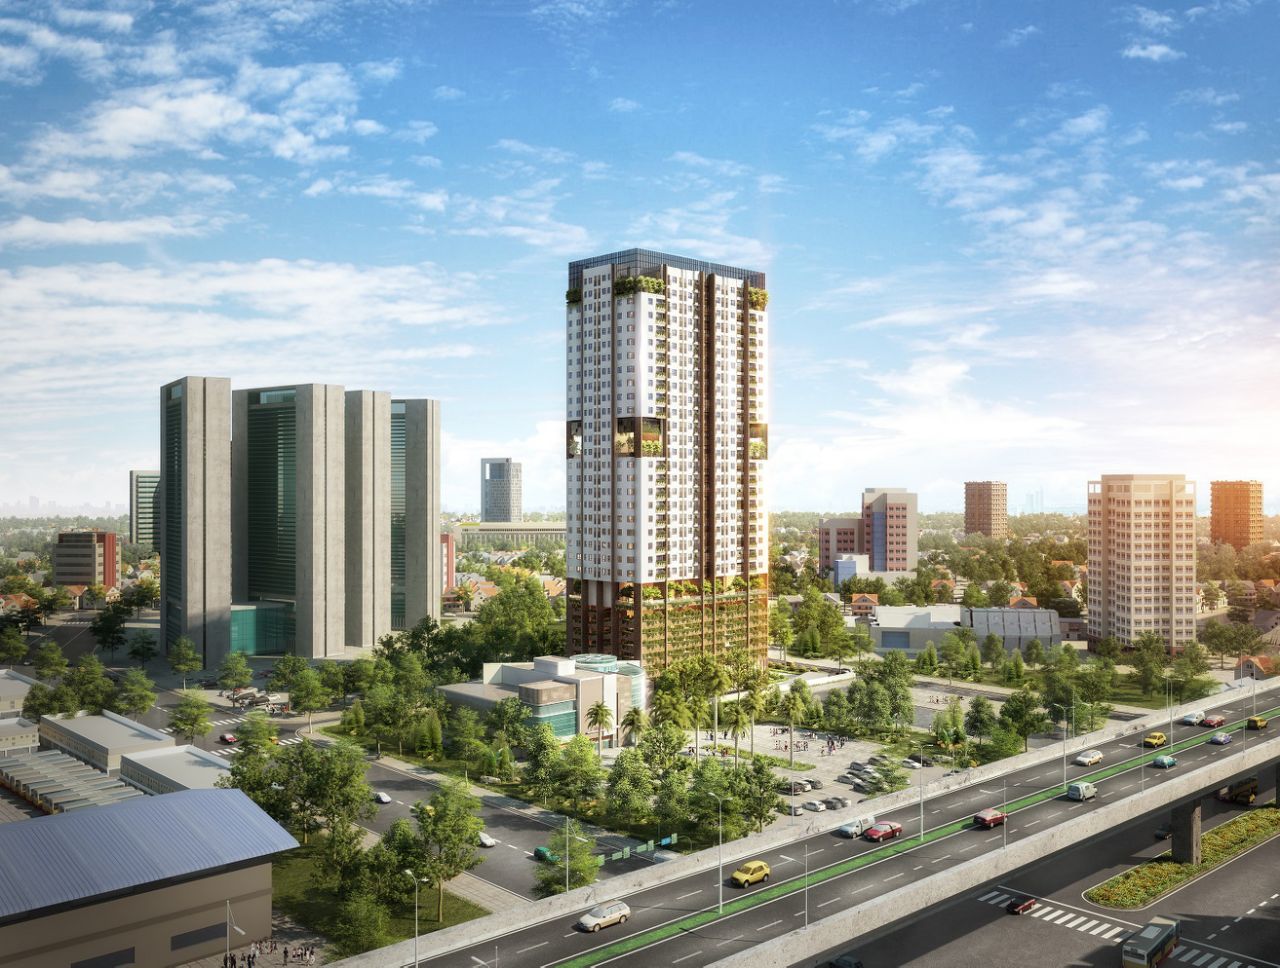 Nằm tại trung tâm đô thị mới, phía Tây thủ đô Hà Nội, FLC Green Apartment được kỳ vọng là một kiểu mẫu mới về căn hộ ở